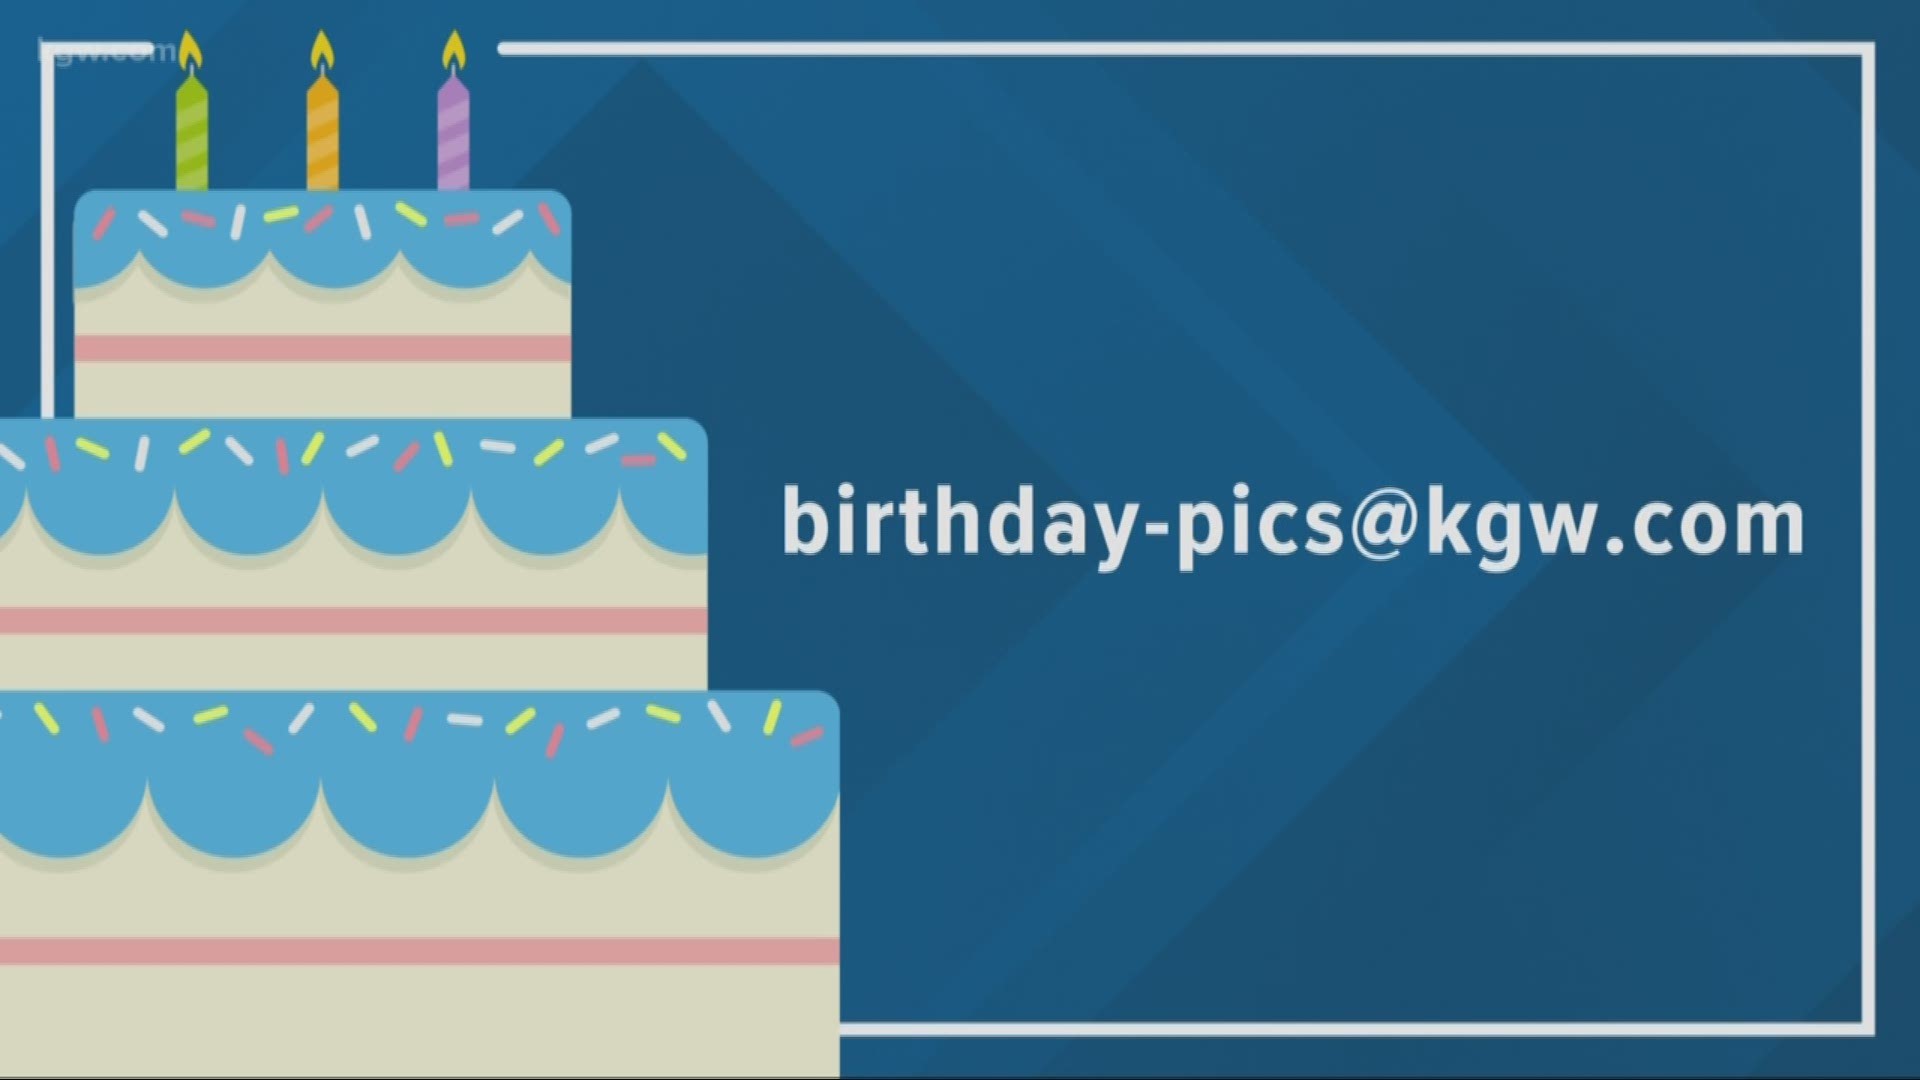 KGW viewer birthdays: 9-13-19